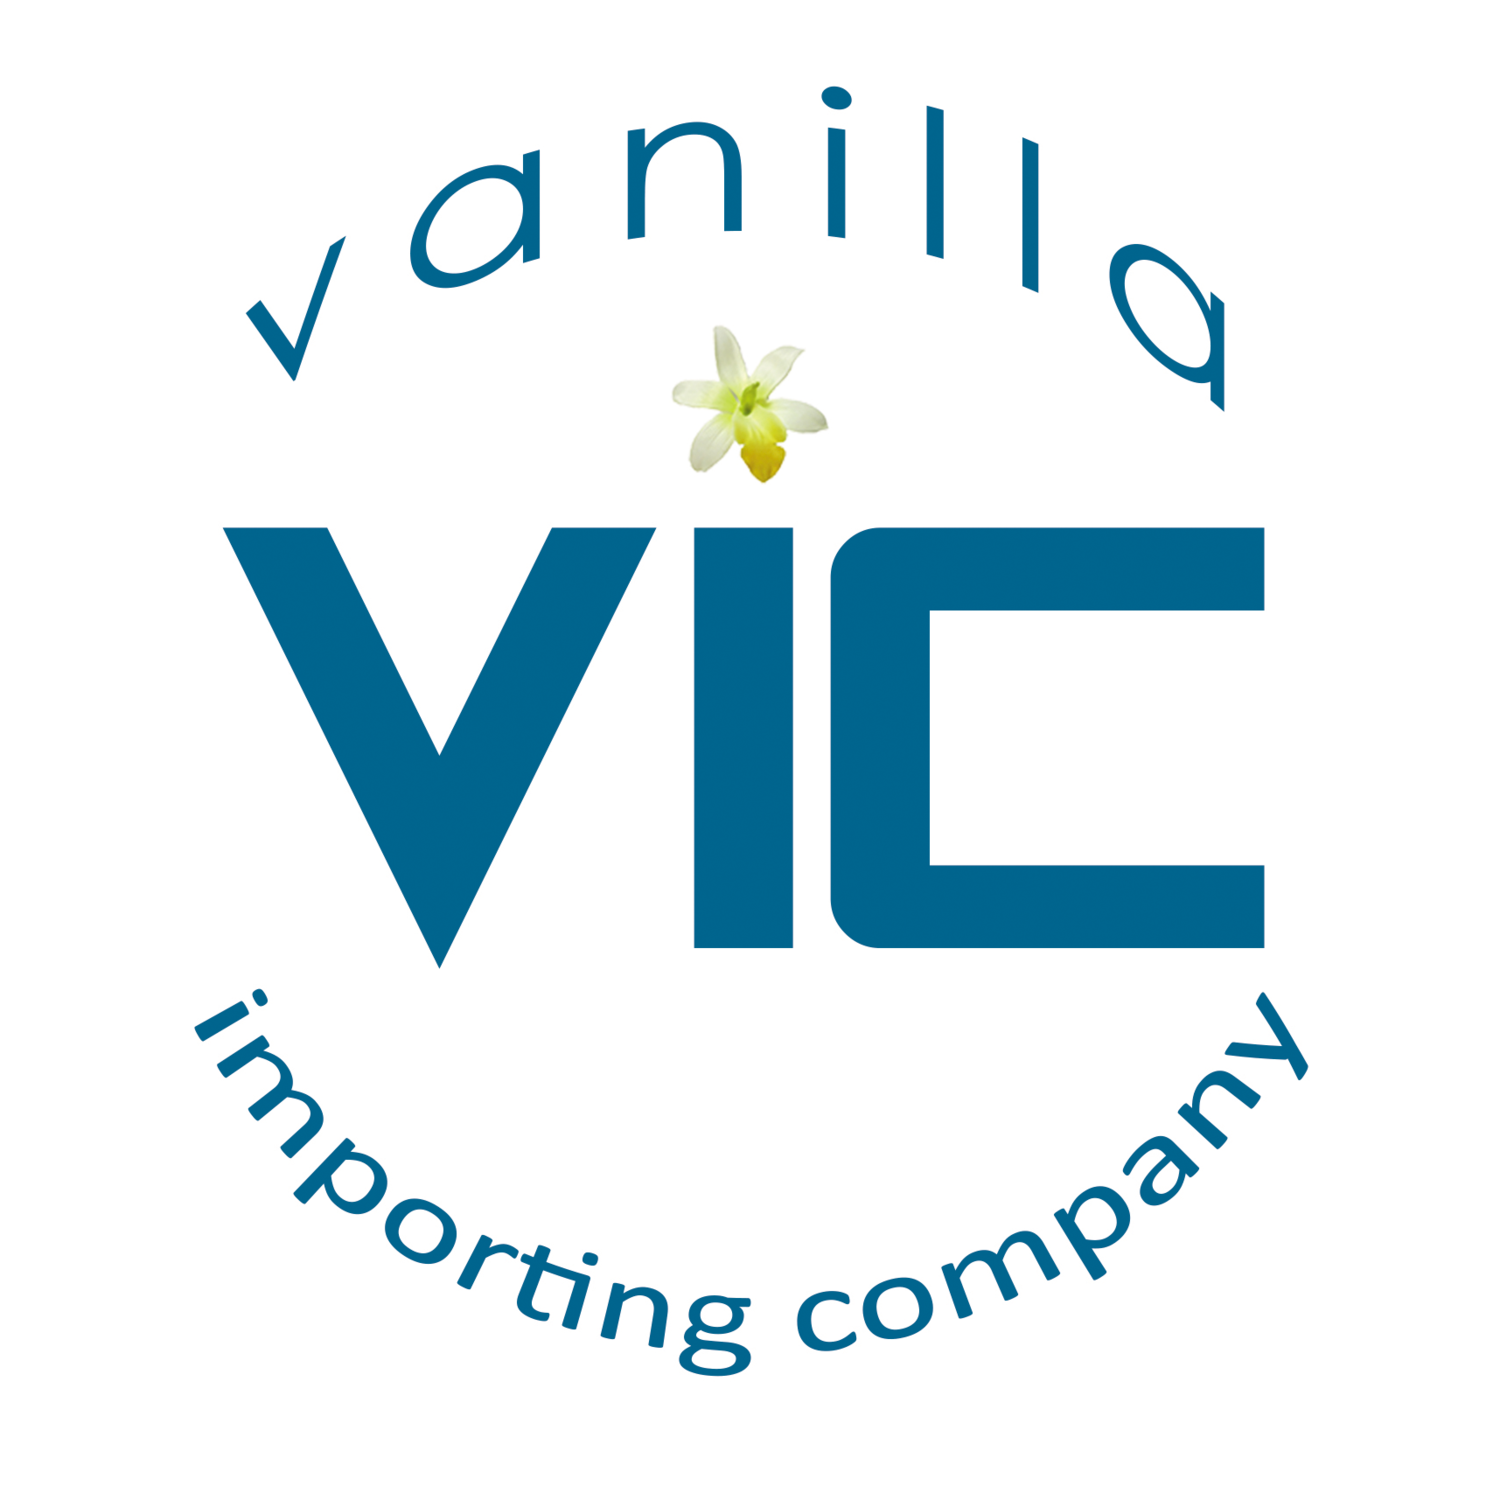 Vanilla Importing company